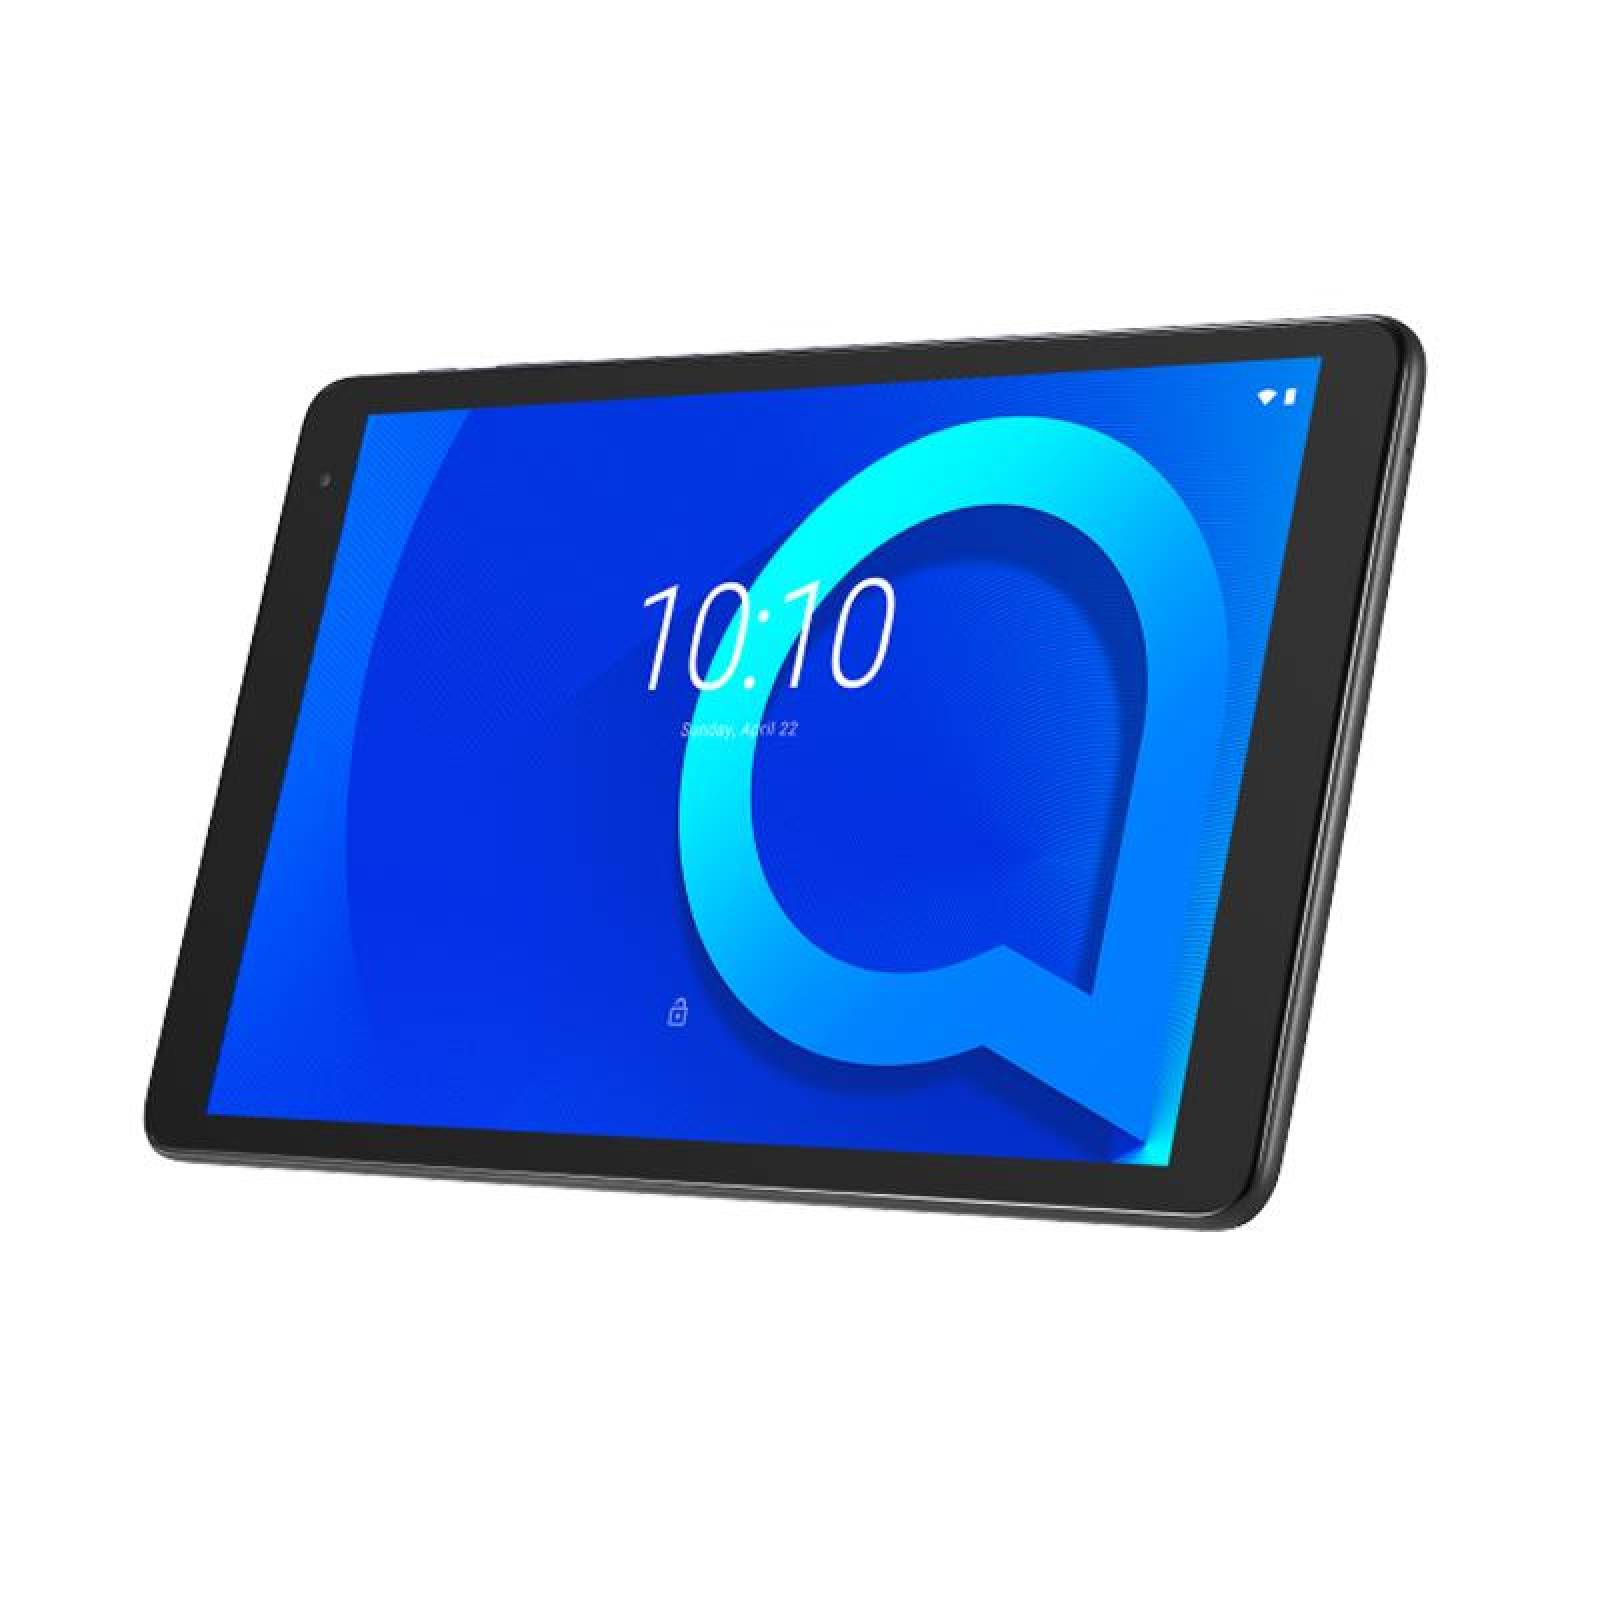  Alcatel 1T 10 Tablet 10  Wi Fi  16MB 1MB